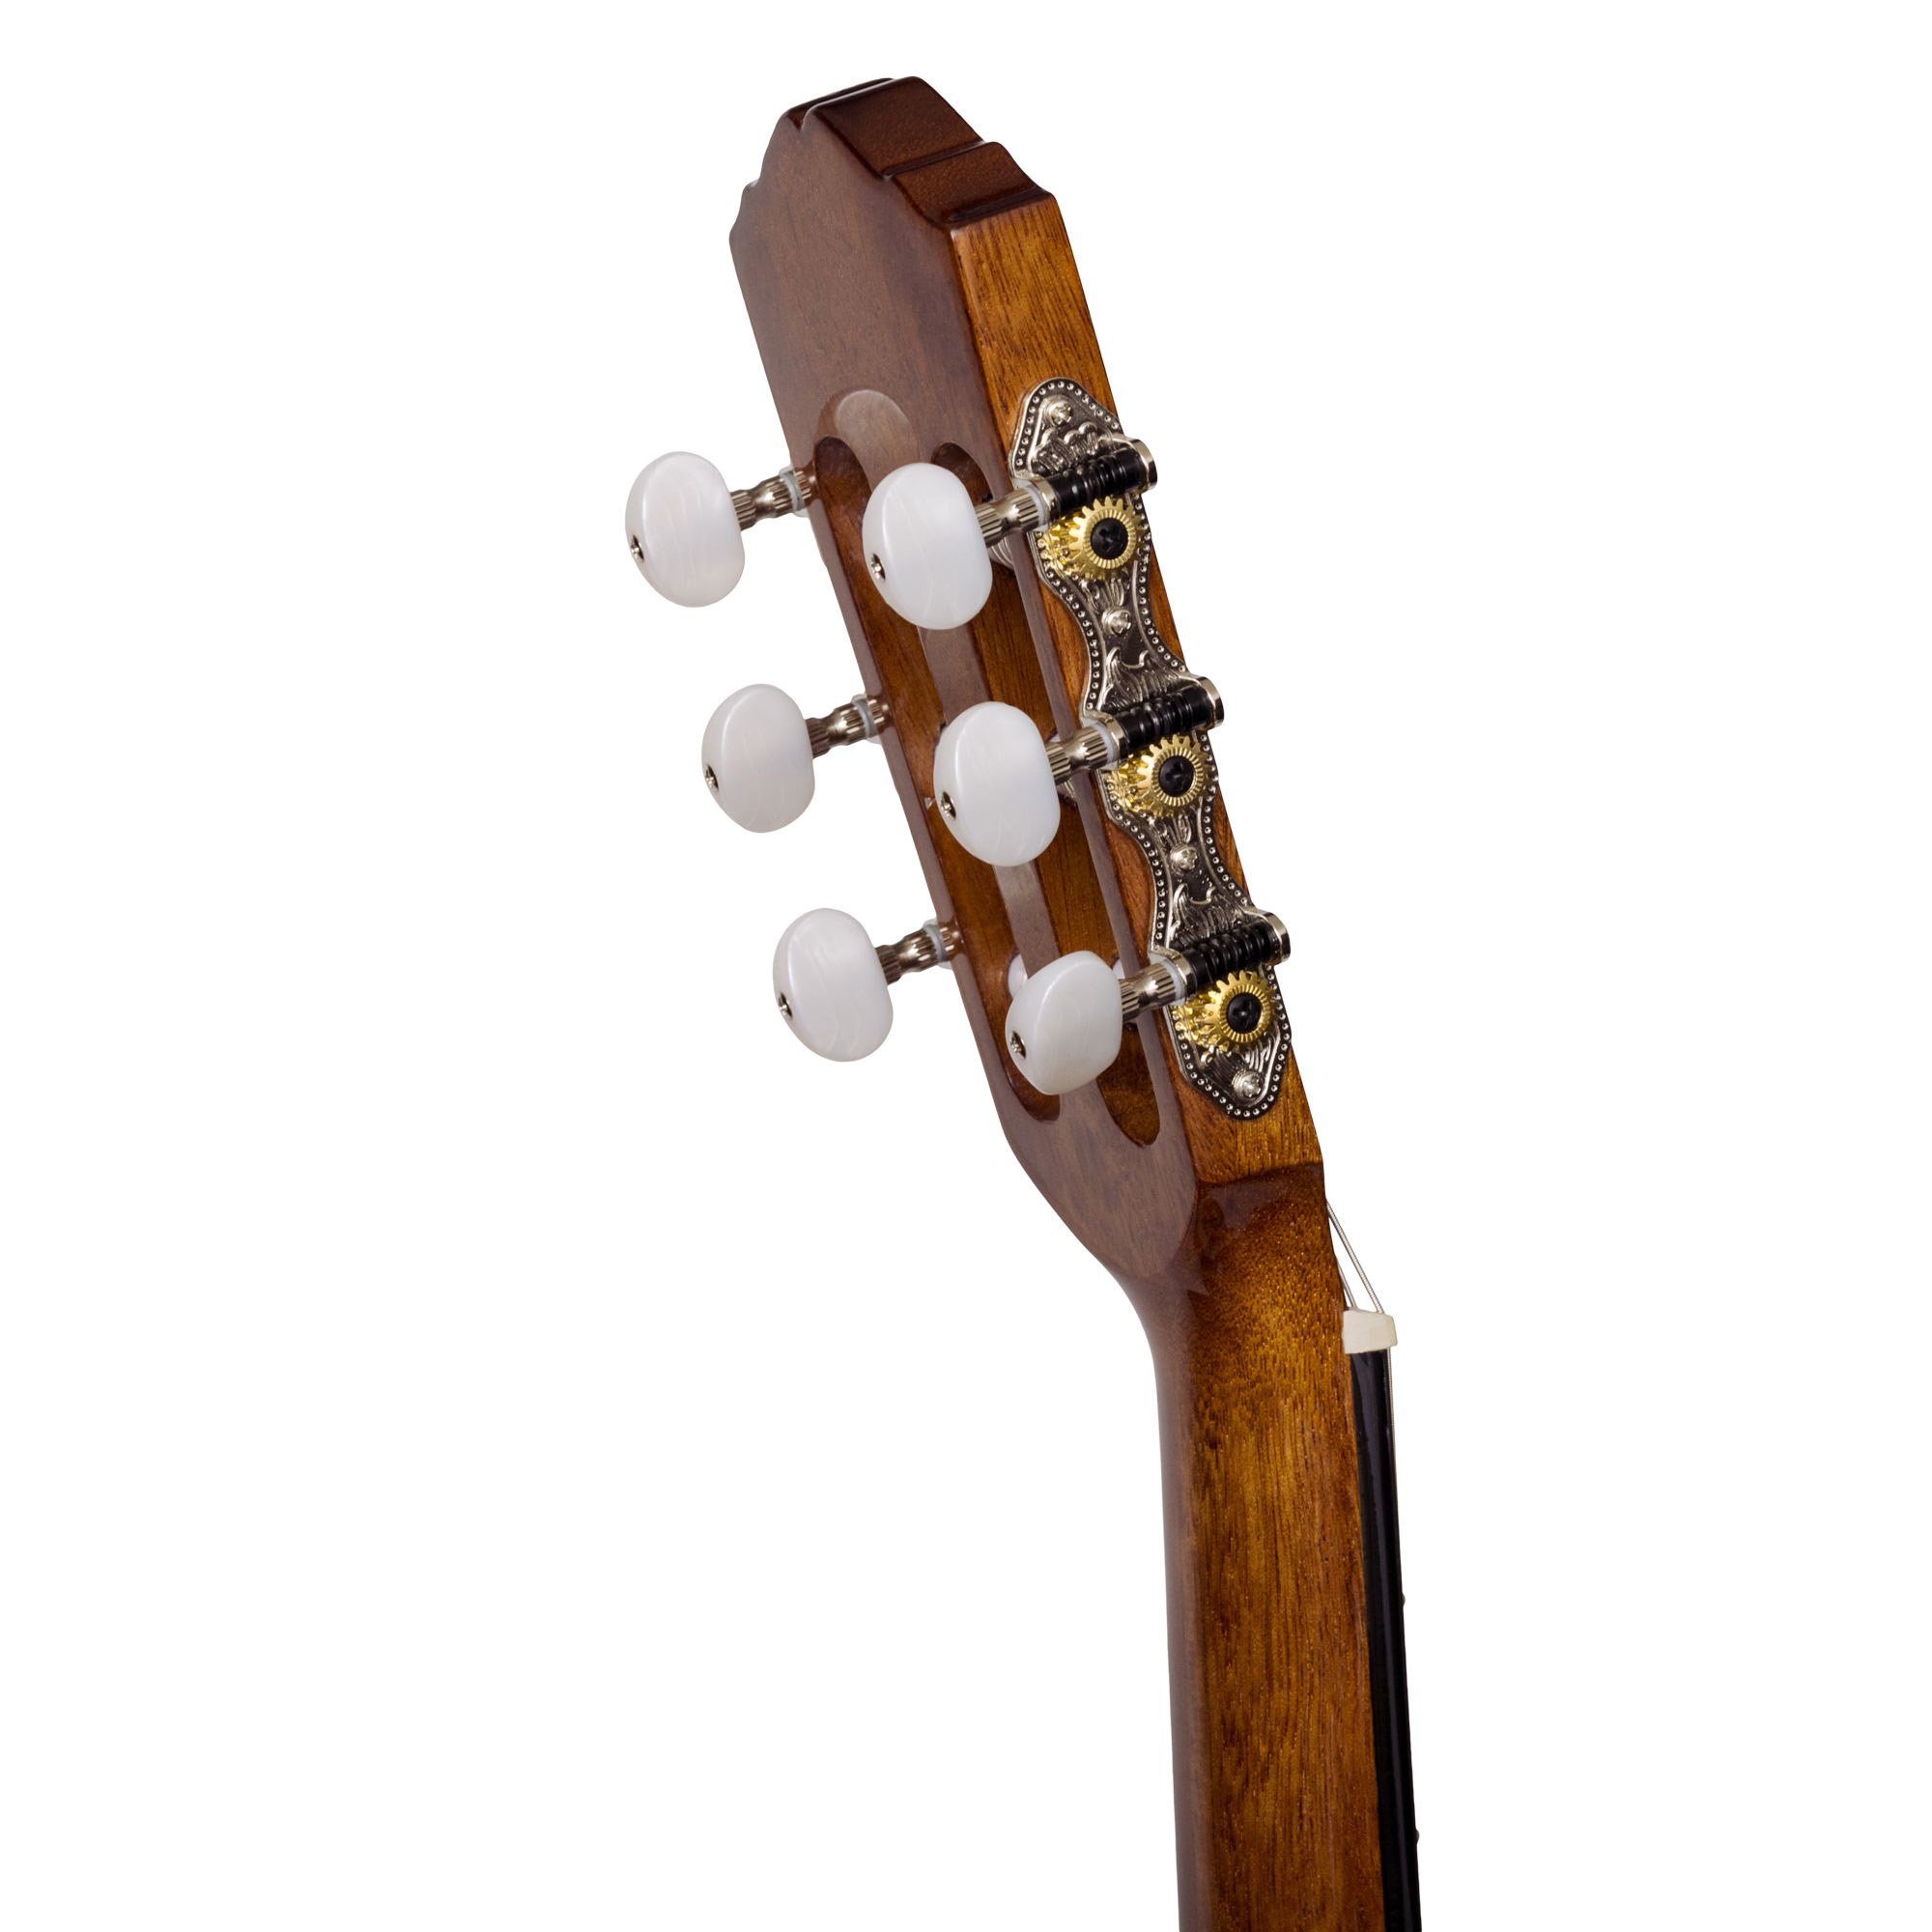 Rockdale Classic C10 Классические гитары